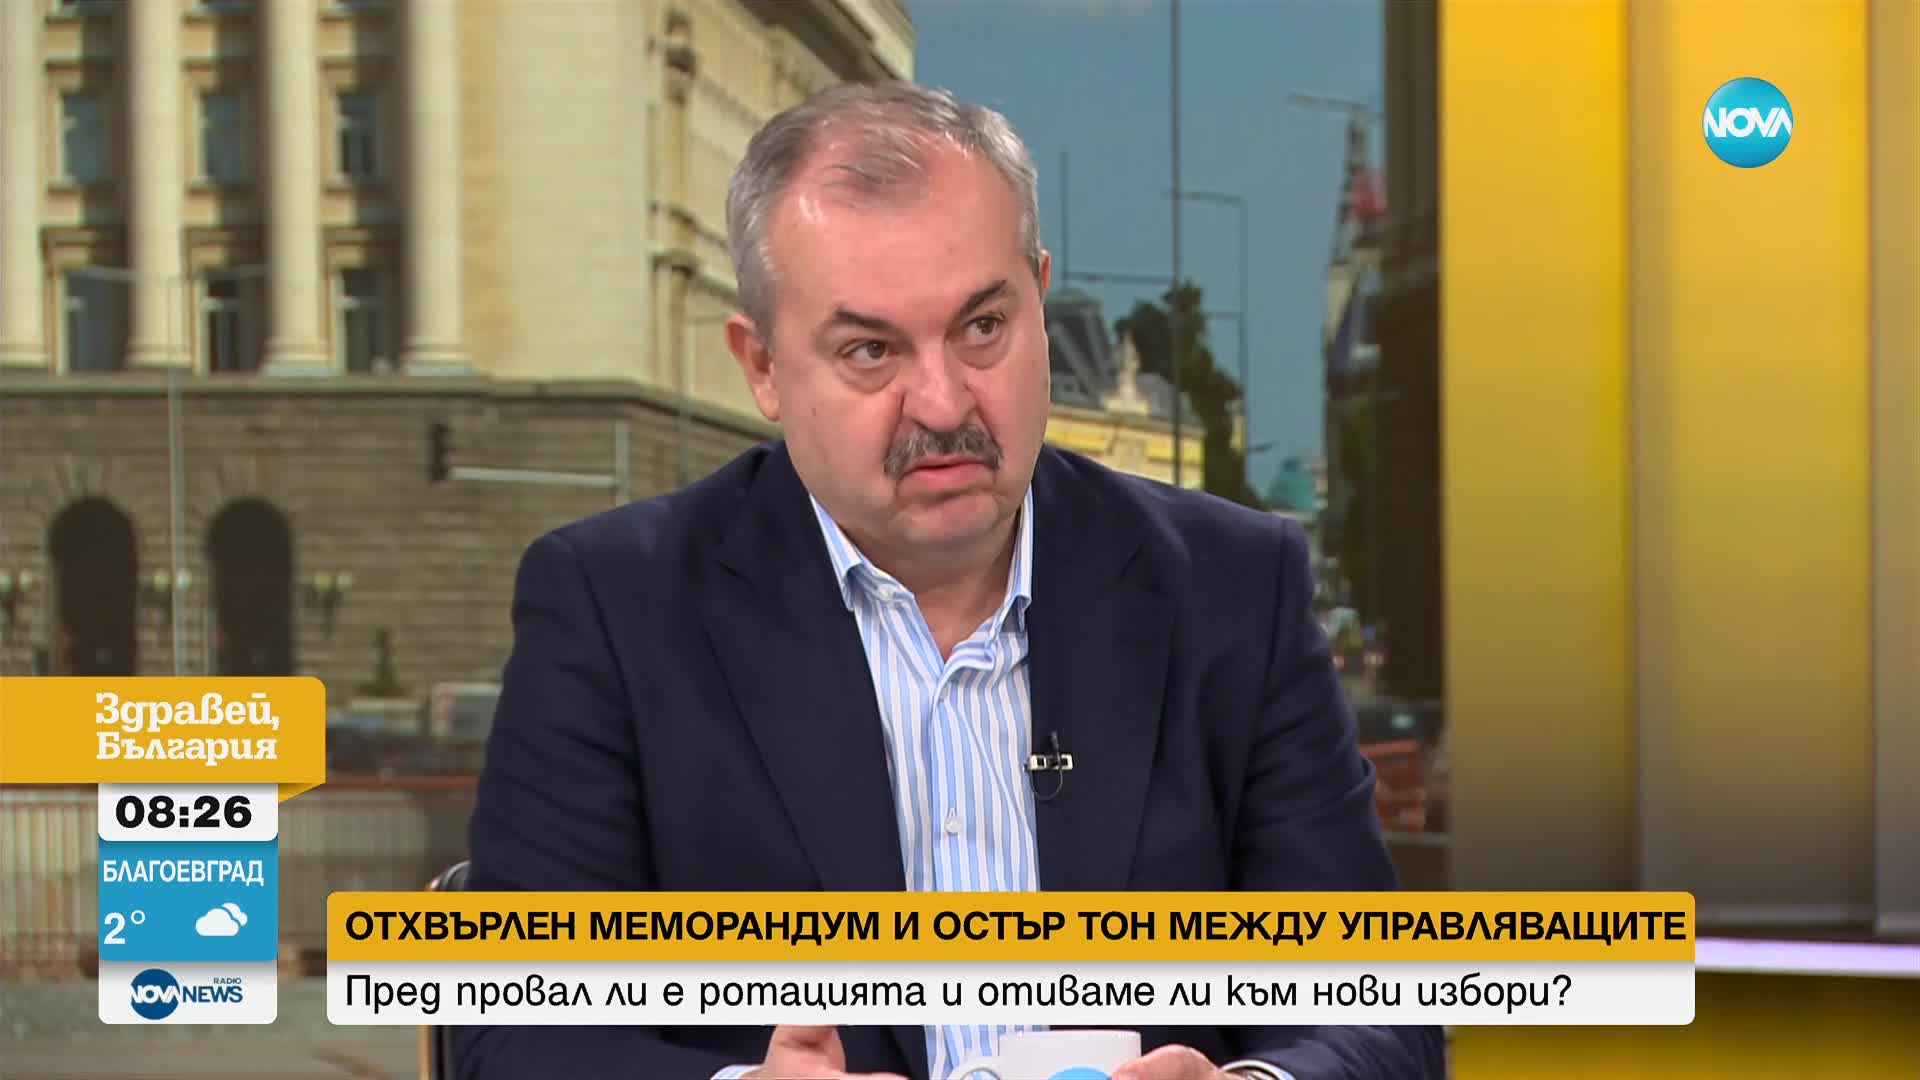 Георги Лозанов: Ще отидем на избори, ако ГЕРБ и ДПС имат самочувствието, че ще ги спечелят